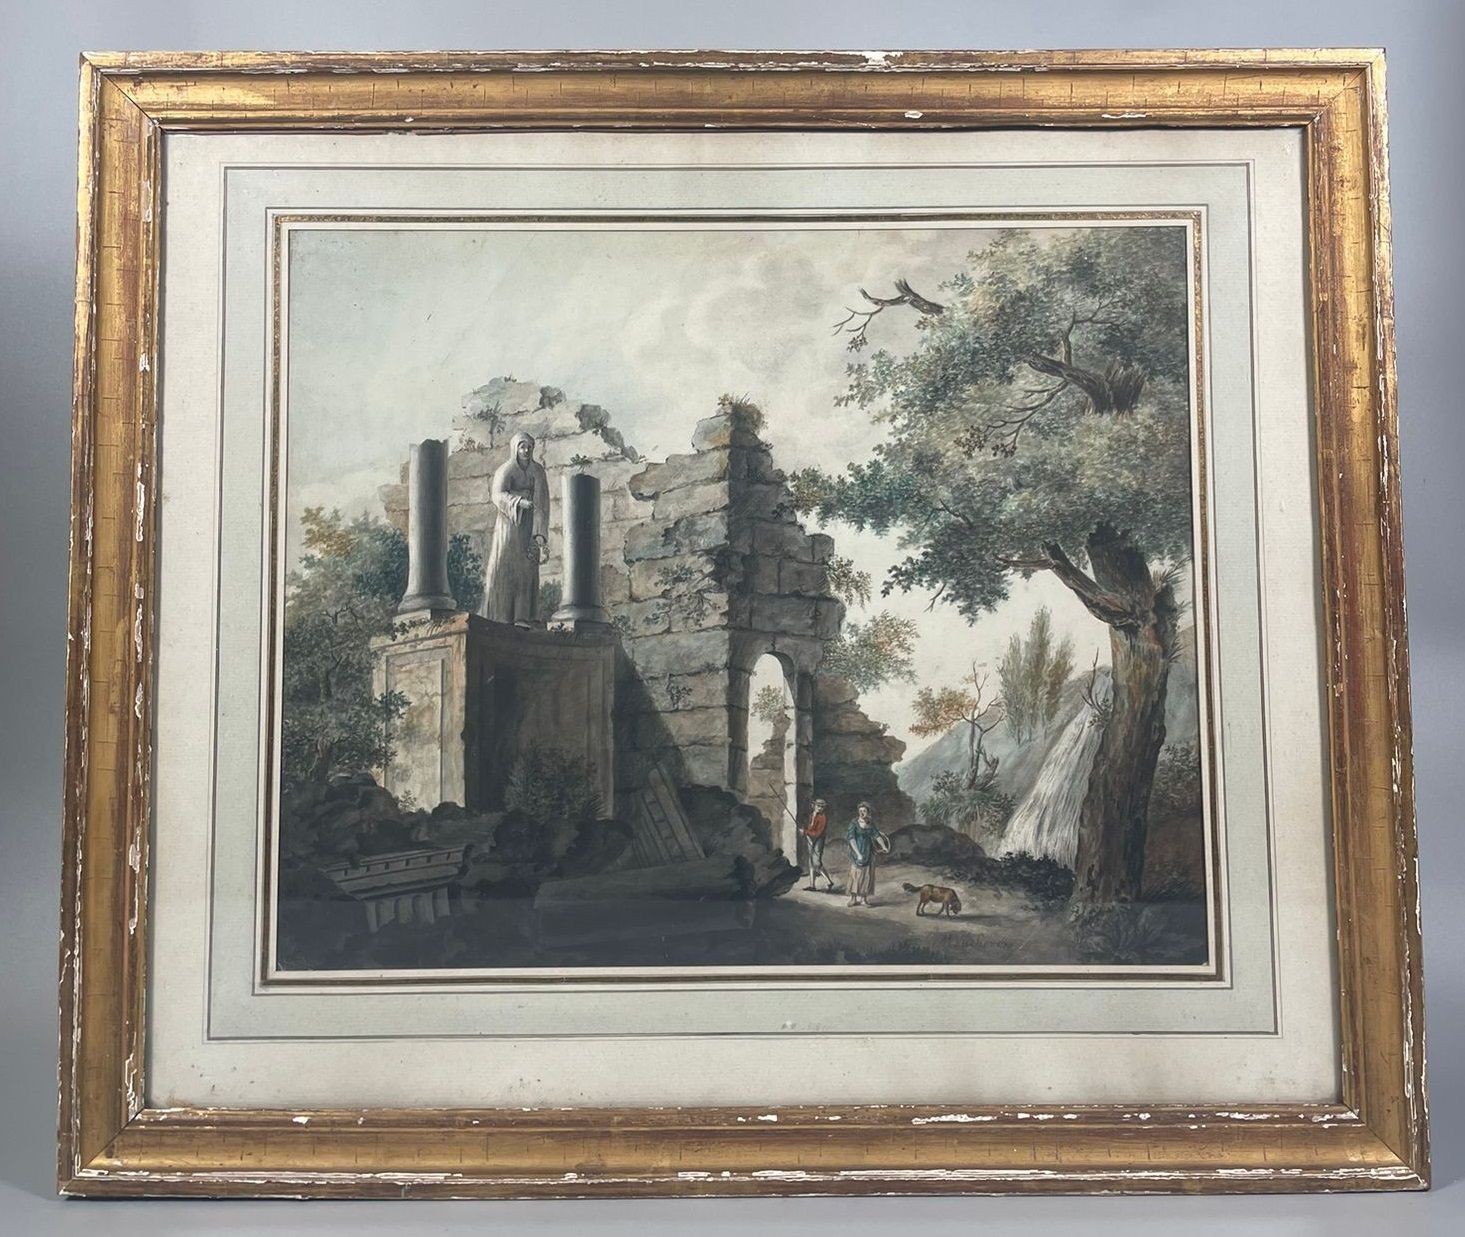 Null ECOLE DU NORD du XVIIIè siècle
Ruines animées
Aquarelle
36,5 x 45,6 cm
Port&hellip;